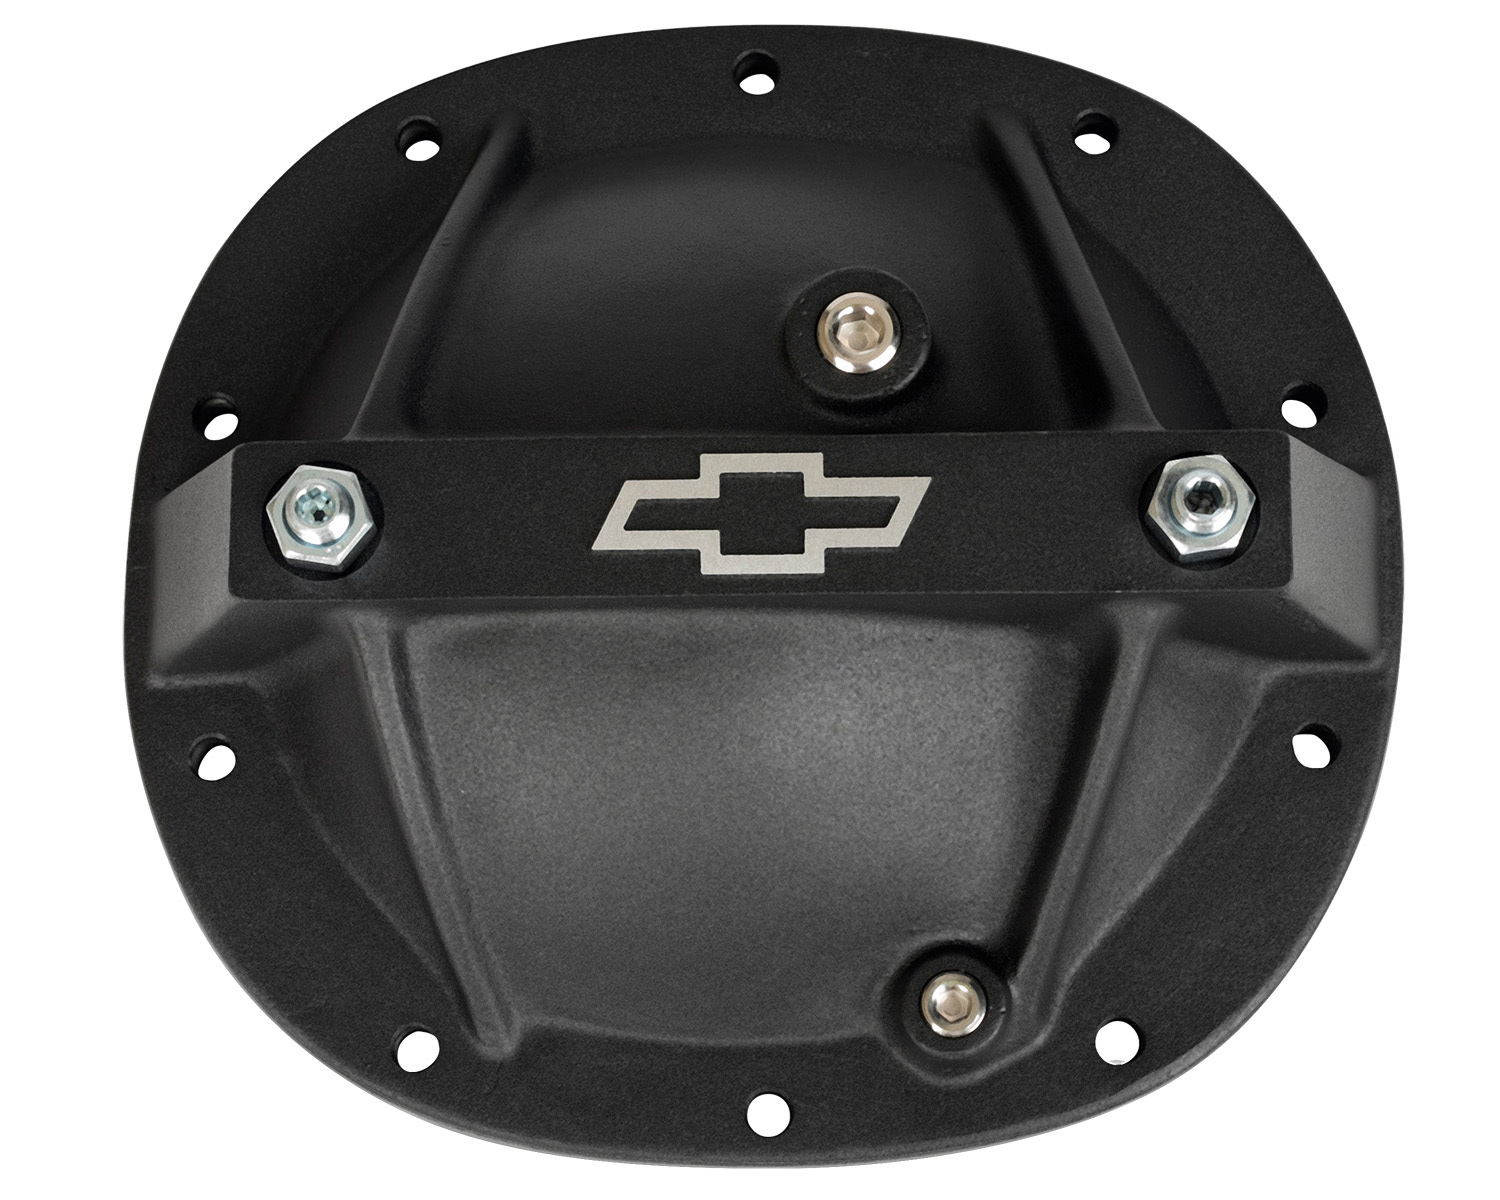 Proform Differential Cover Bowtie Emblem Model Fits GM 7.5 Aluminum Black Crinkle Chevrolet Performance Parts